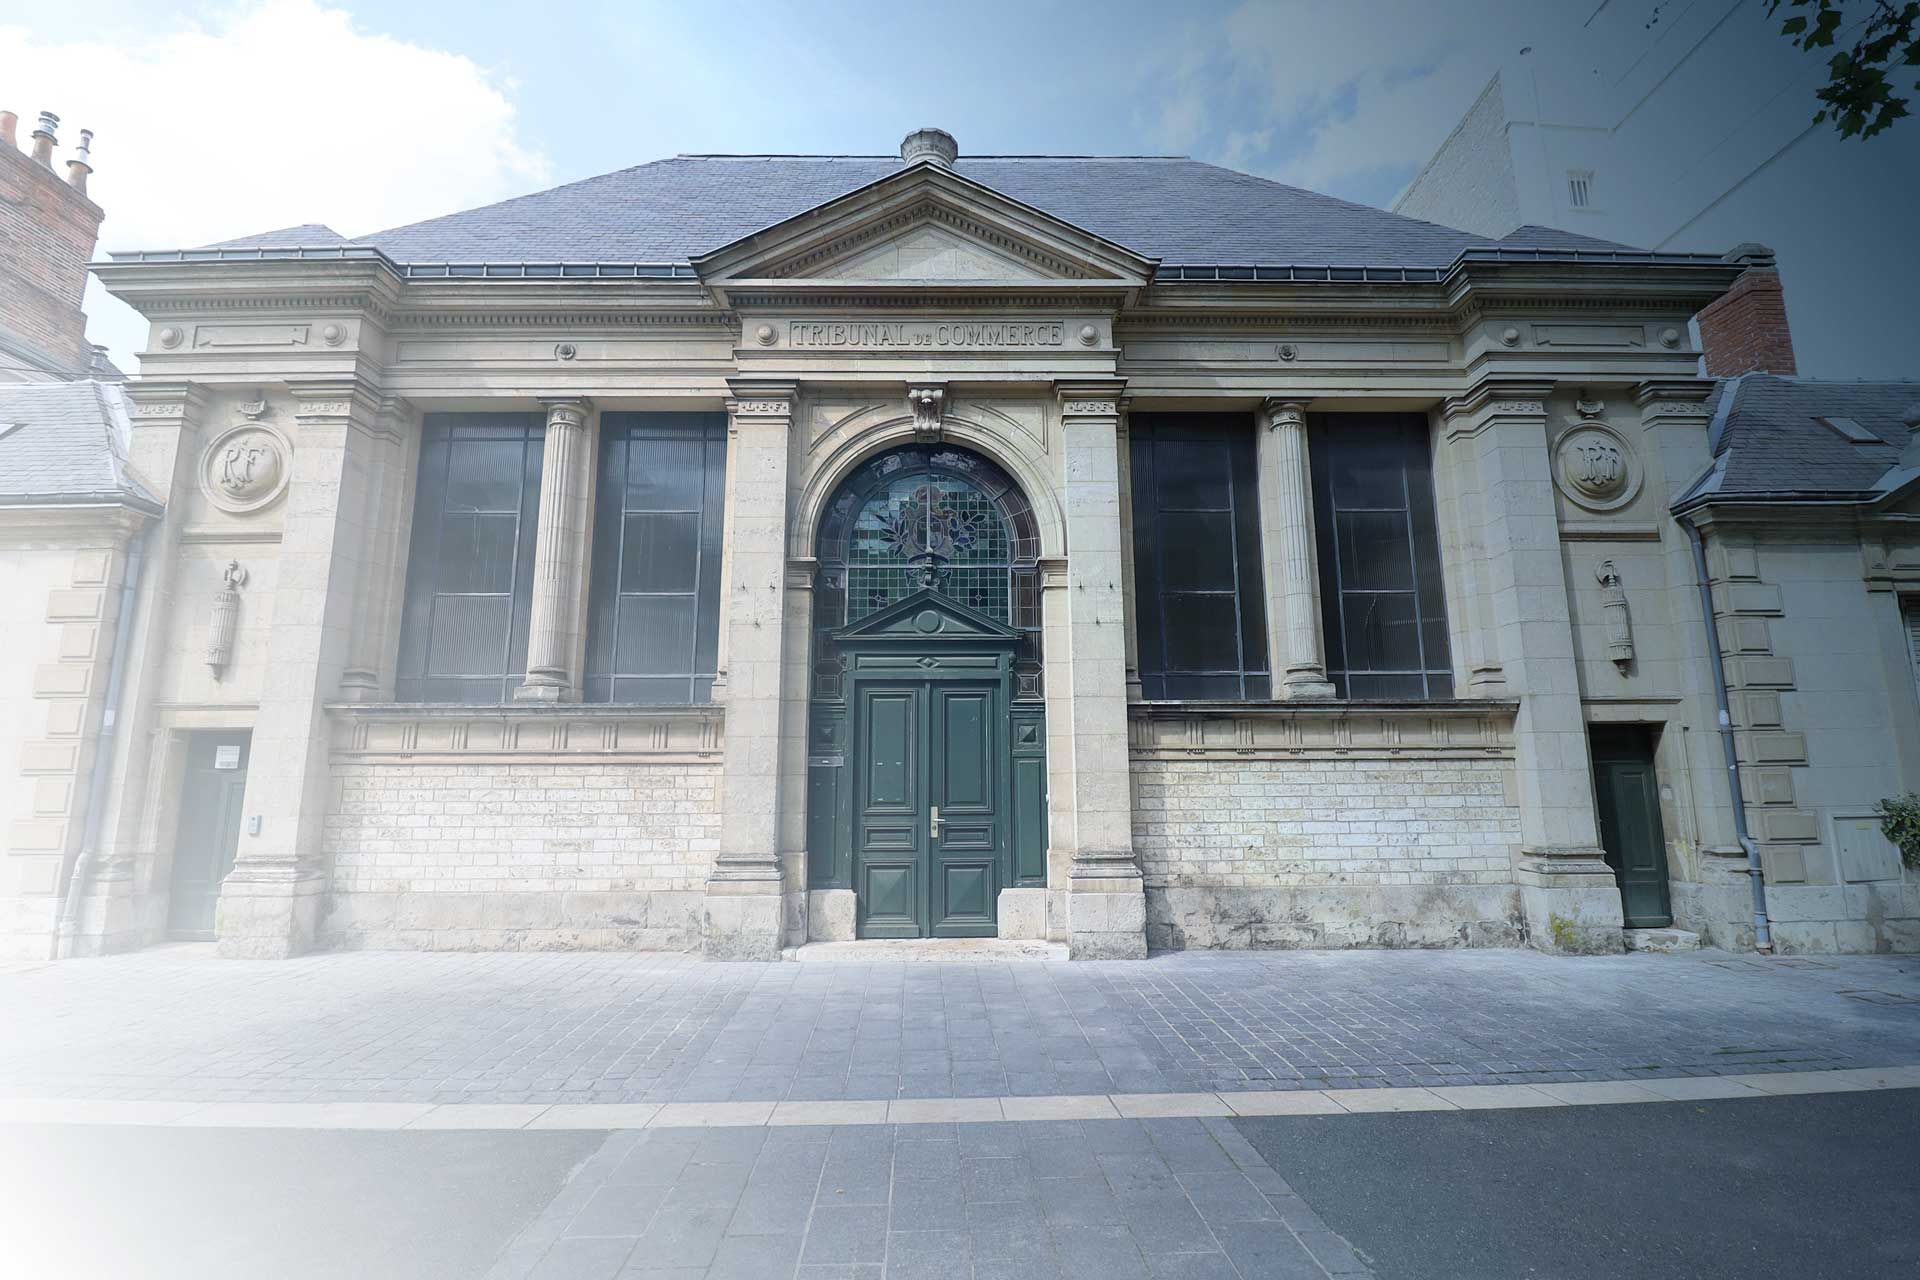 Le tribunal de commerce dans la ville de Chartres